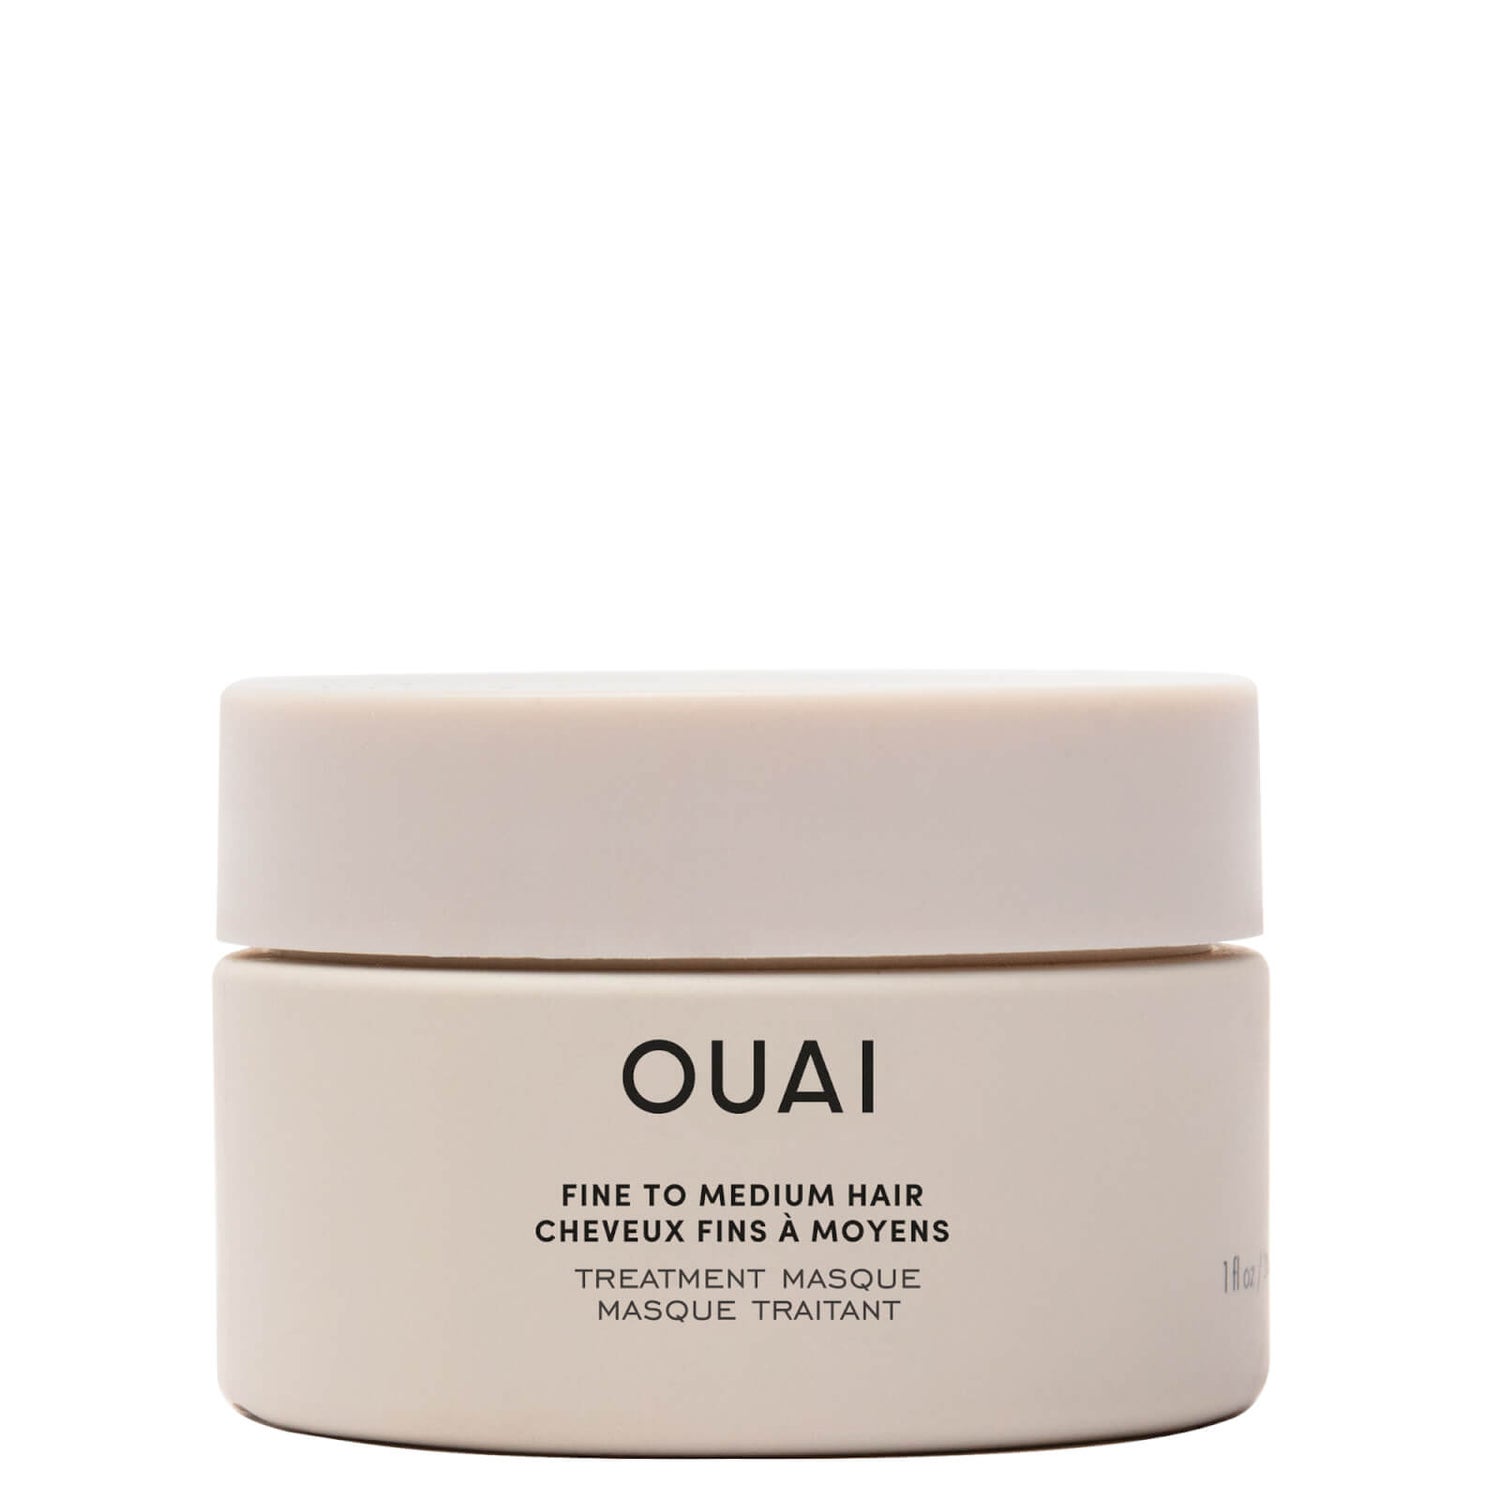 OUAI Hair Treatment Masque for Fine to Medium Hair 30g (Worth £7.00)